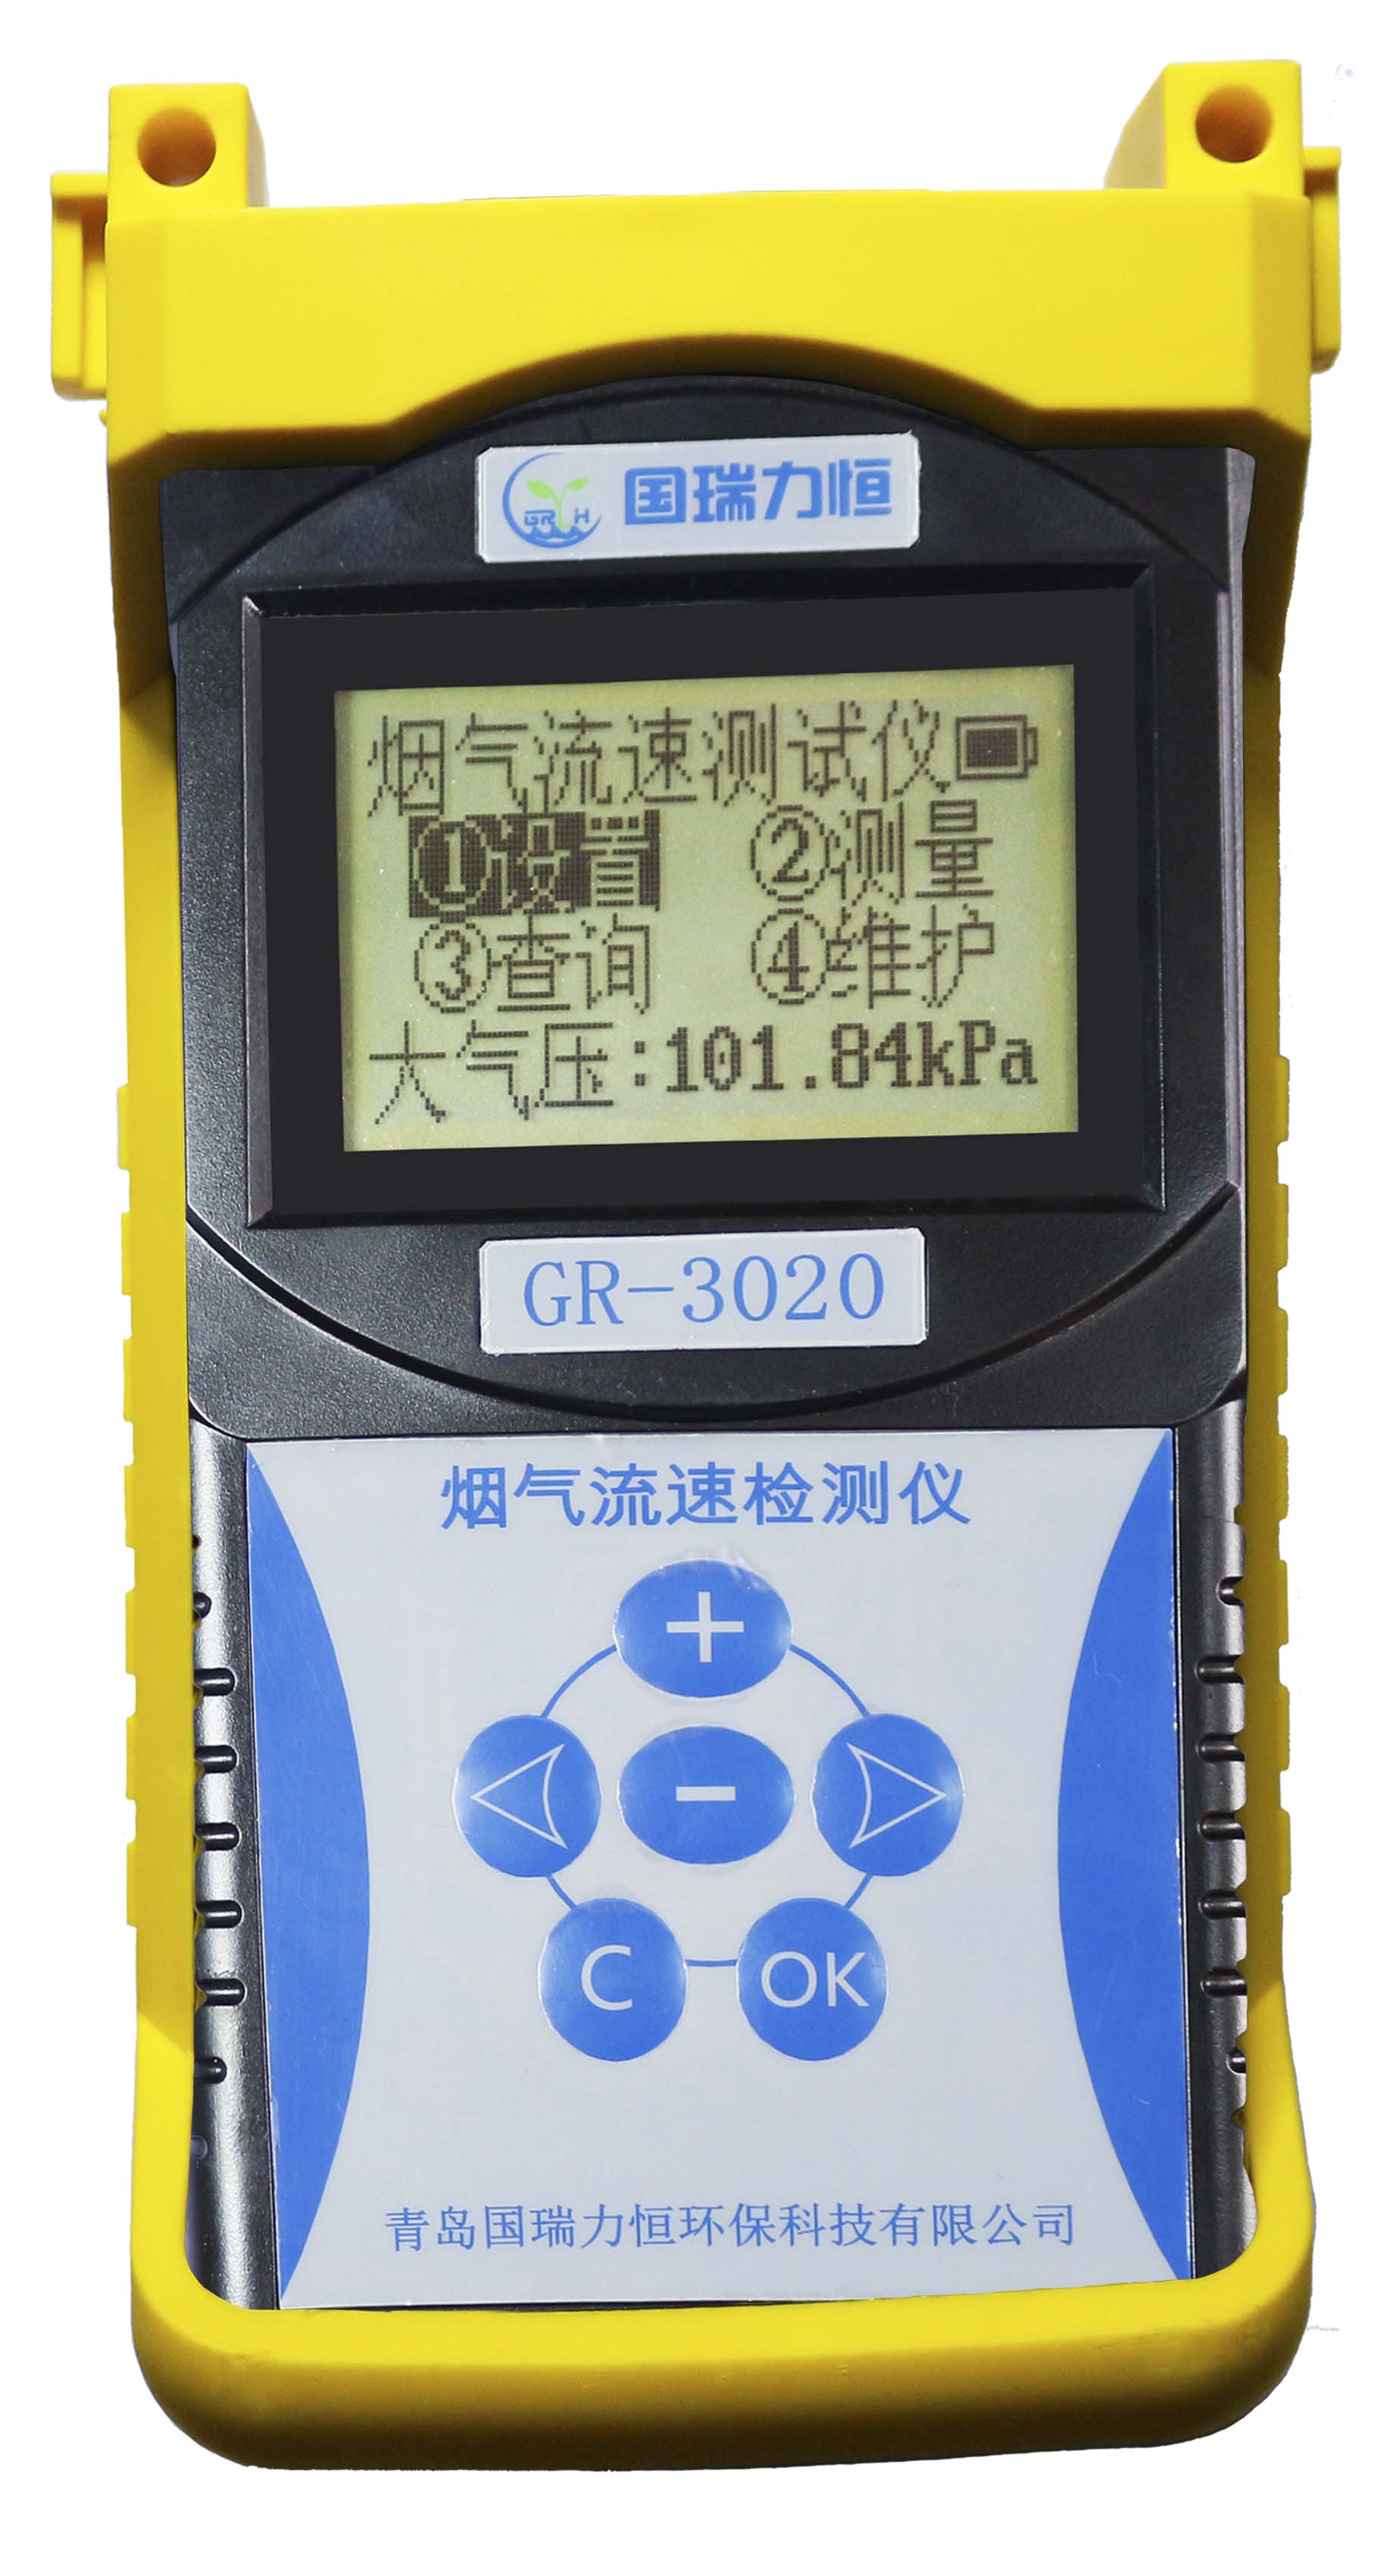 青岛国瑞厂家直销 GR-3020型烟气流速检测仪 便携式高精度烟气流速仪